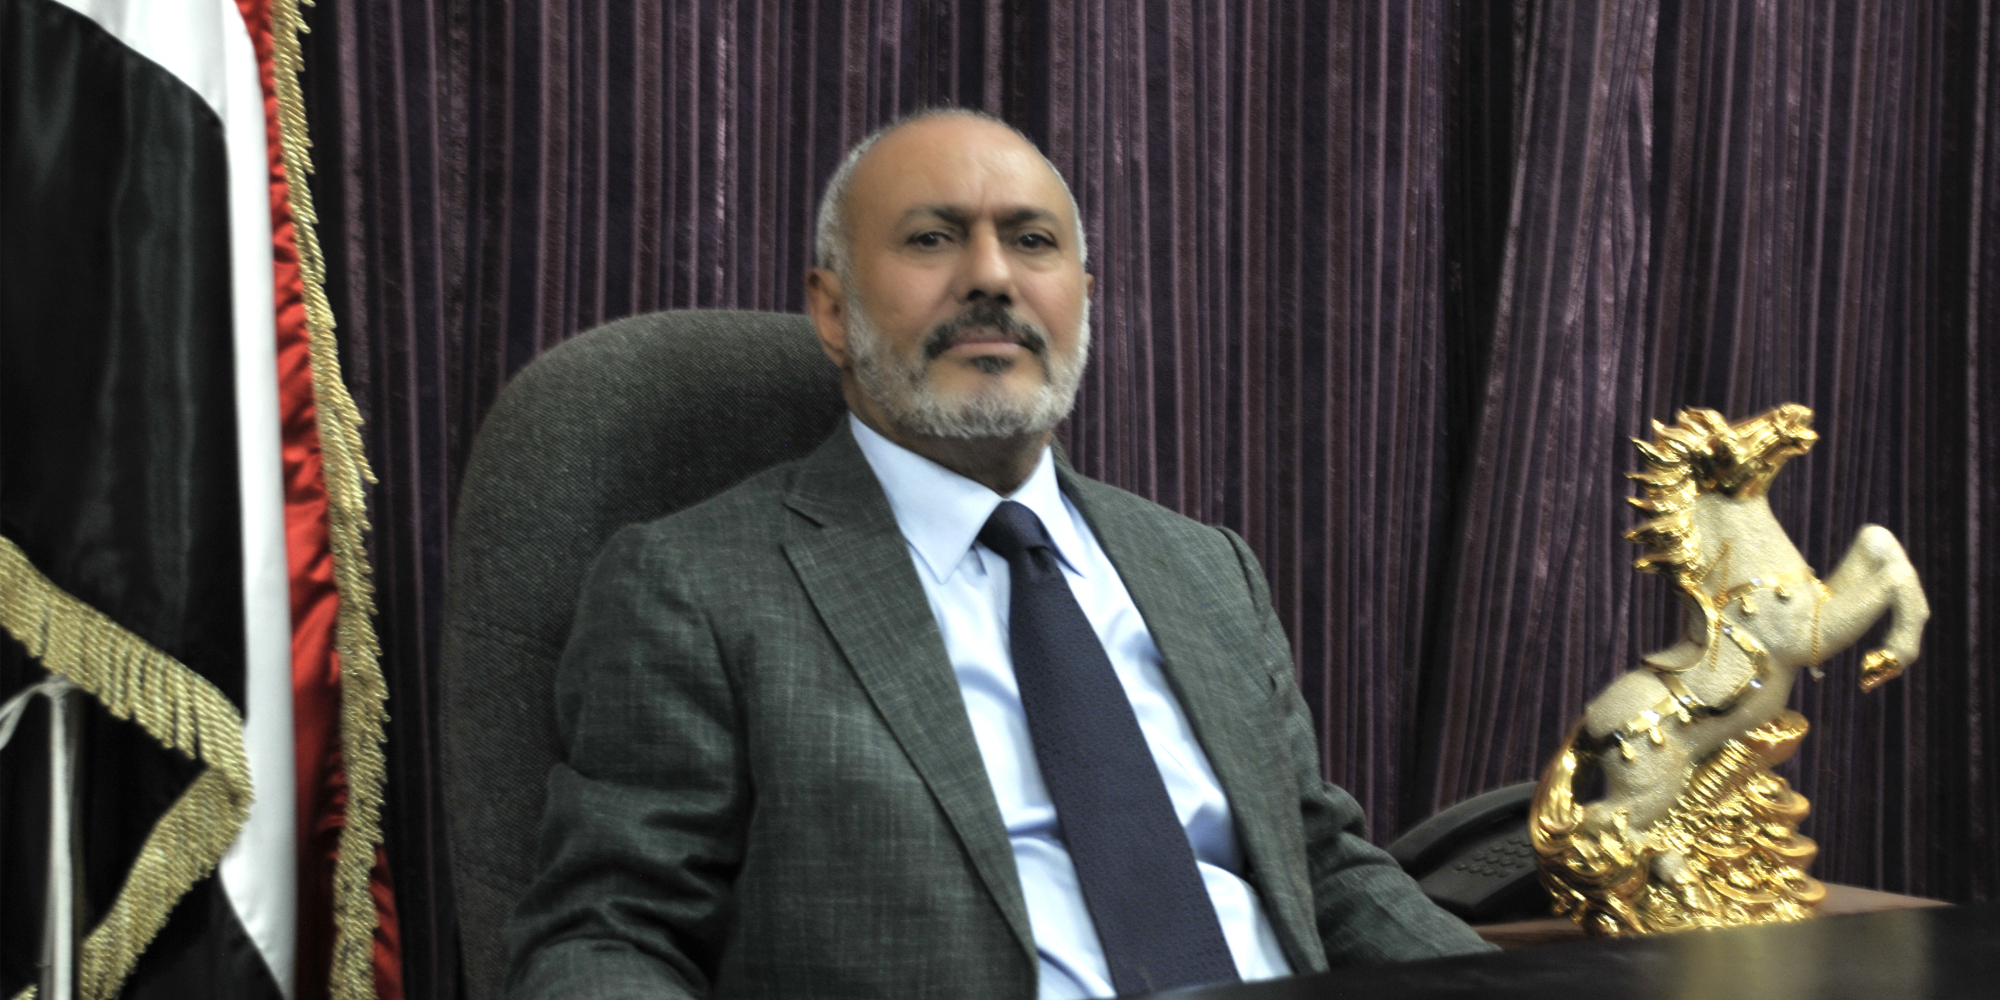 قيادي حوثي يهدد صالح: توقف فوراً عن السيطرة والإيحاء بأن الجيش ملكية خاصة